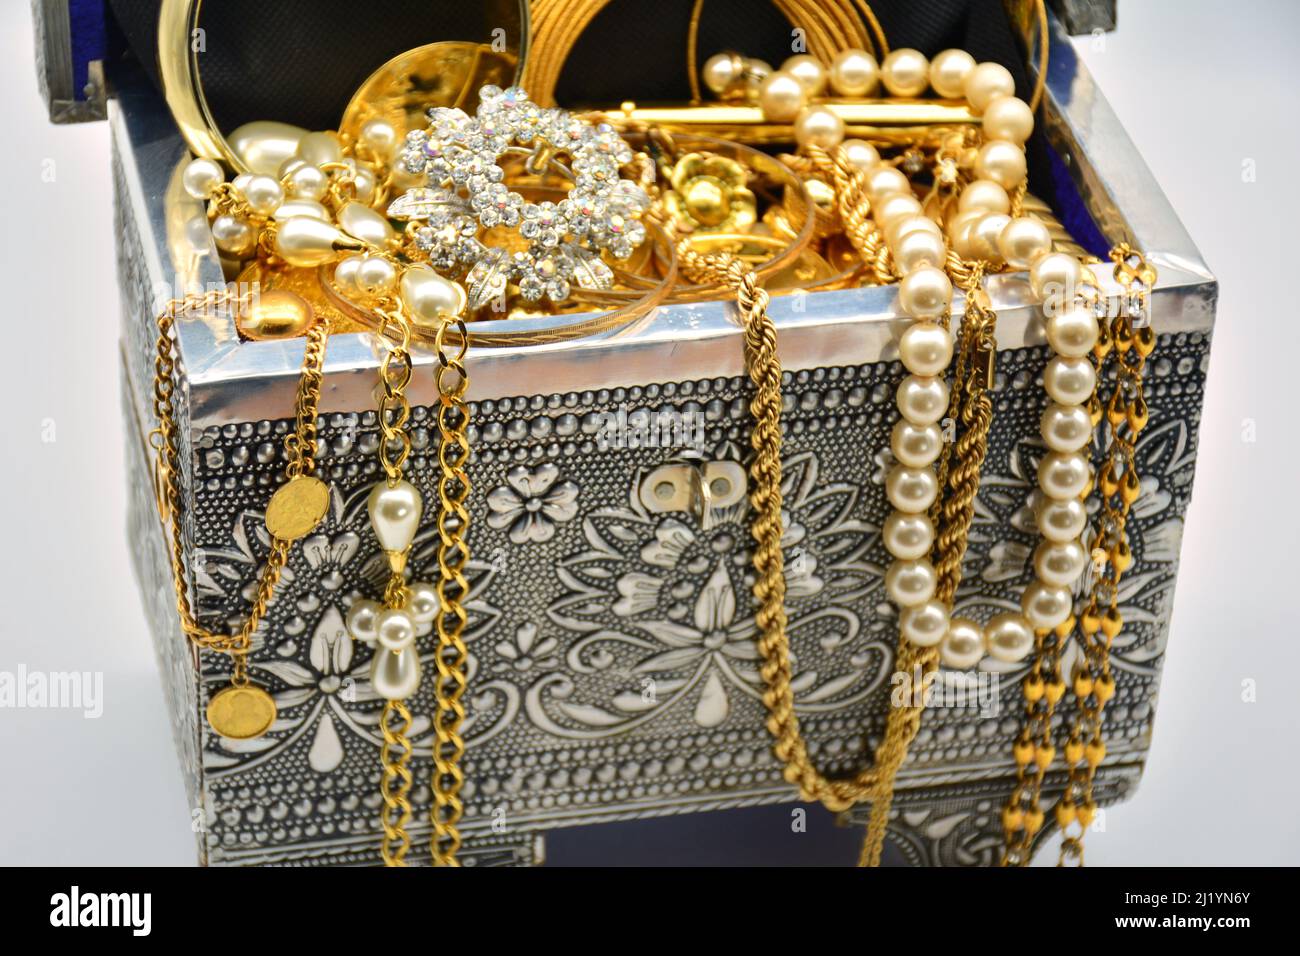 Un tesoro, cofre lleno de joyas, perlas, y oro Stock Photo